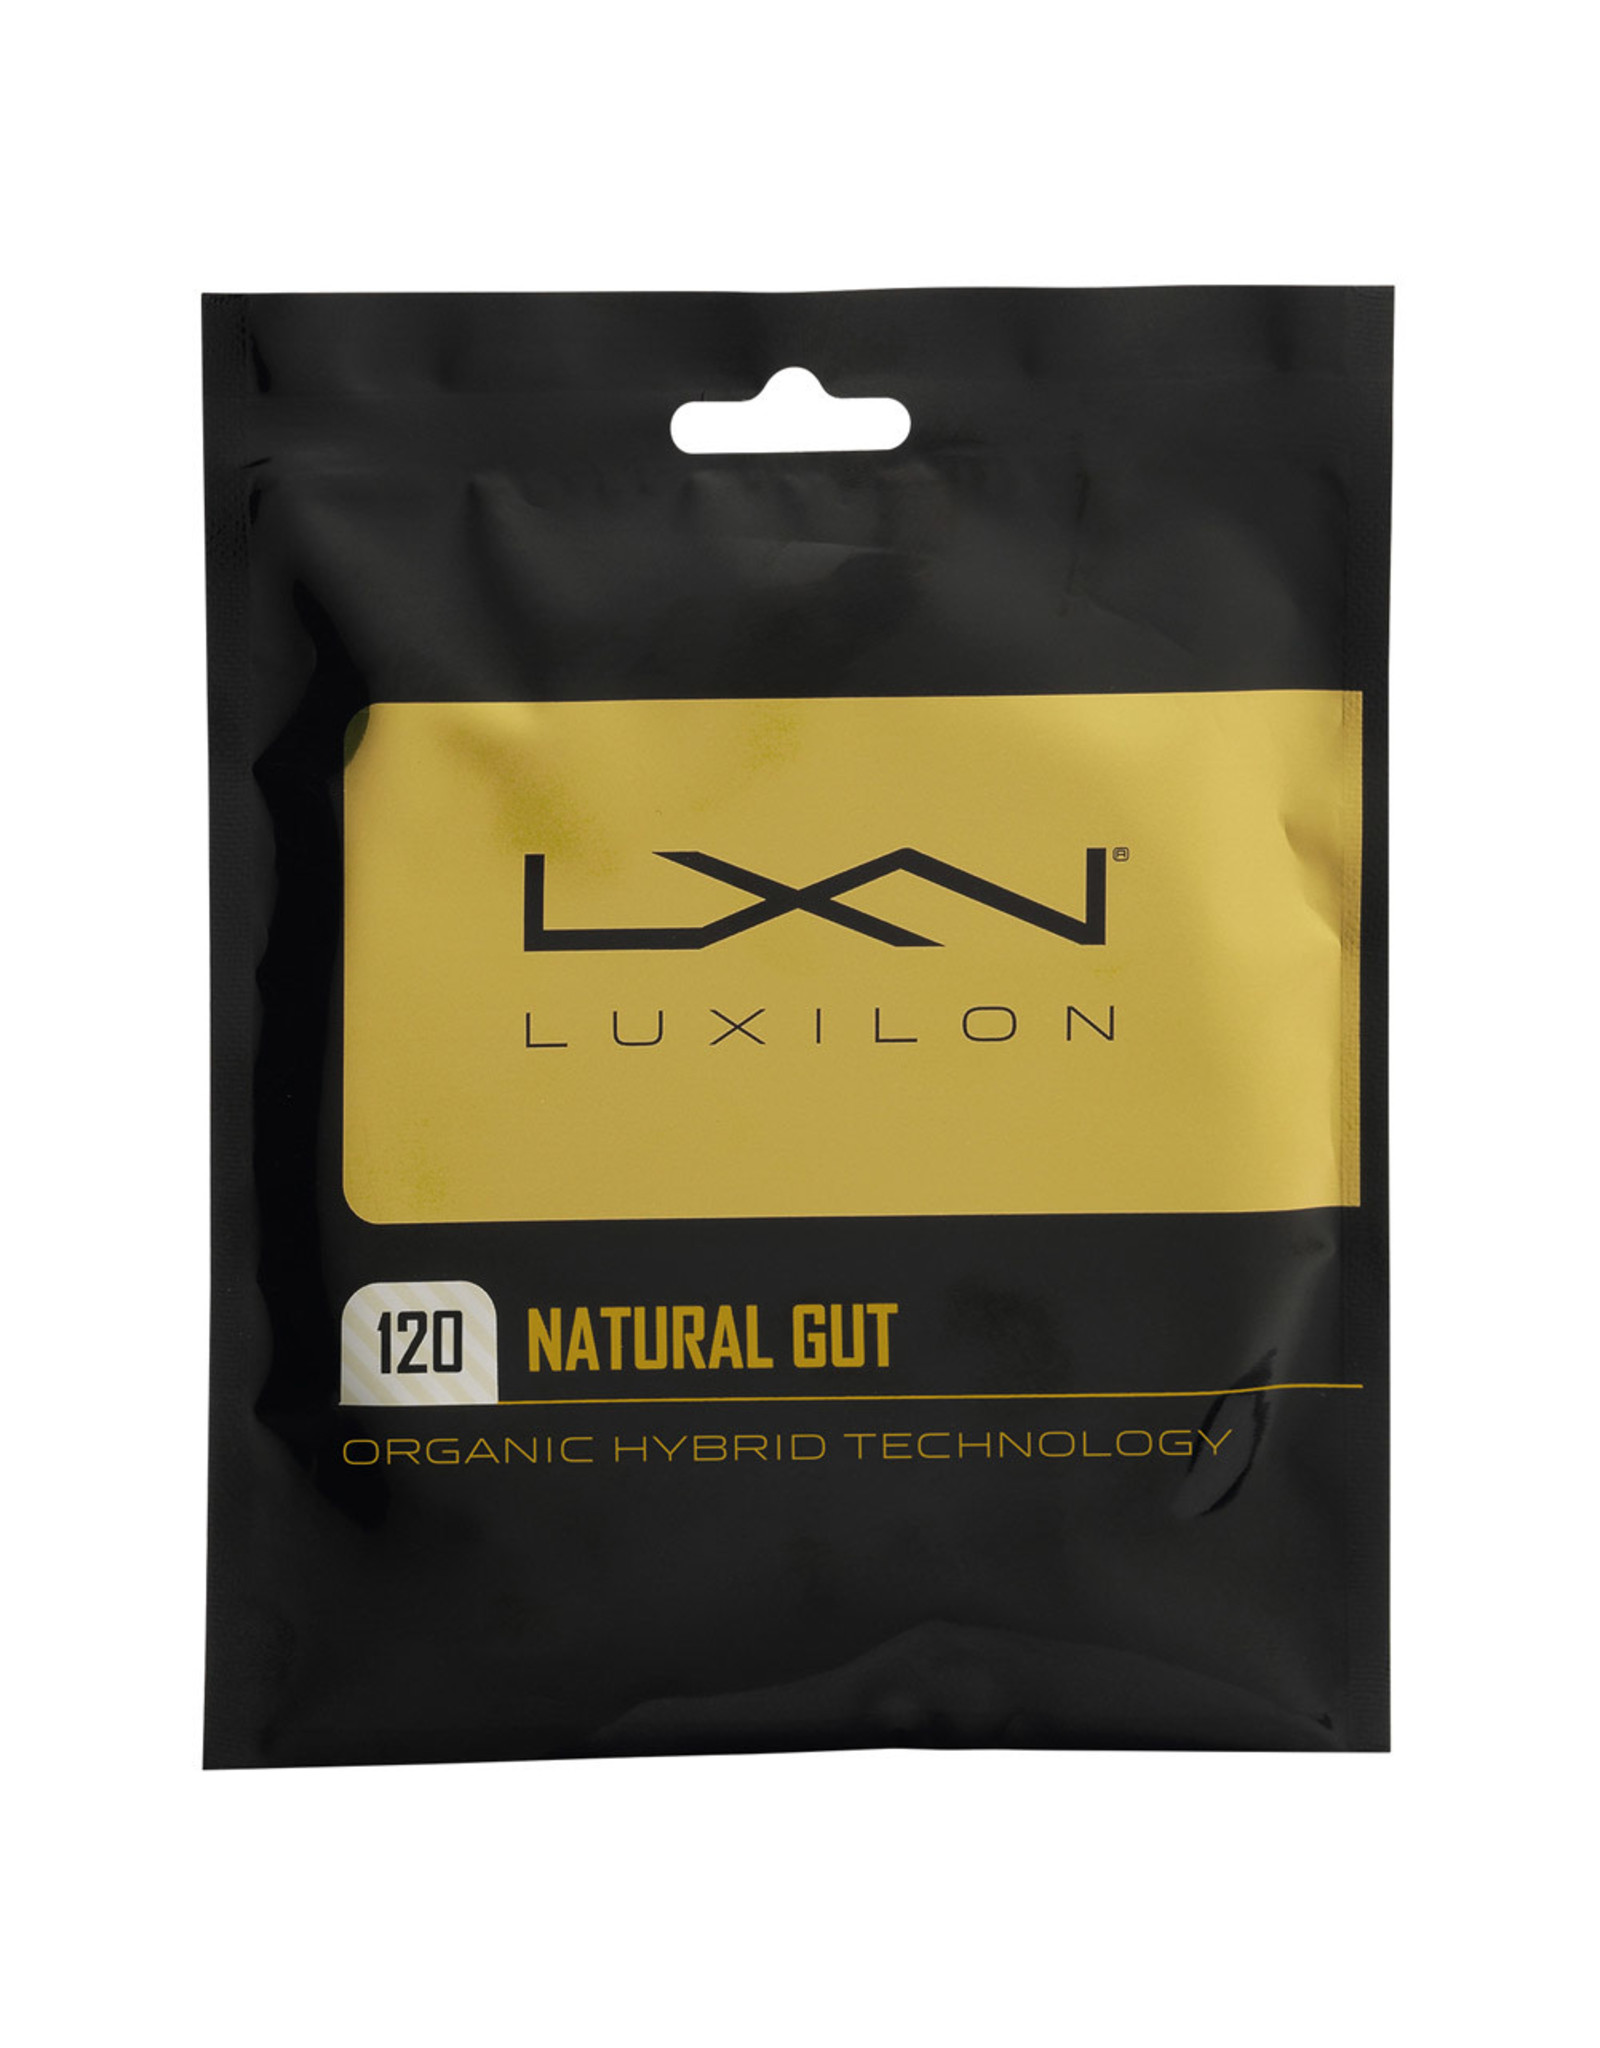 Luxilon Luxilon Natural Gut (1.20) String